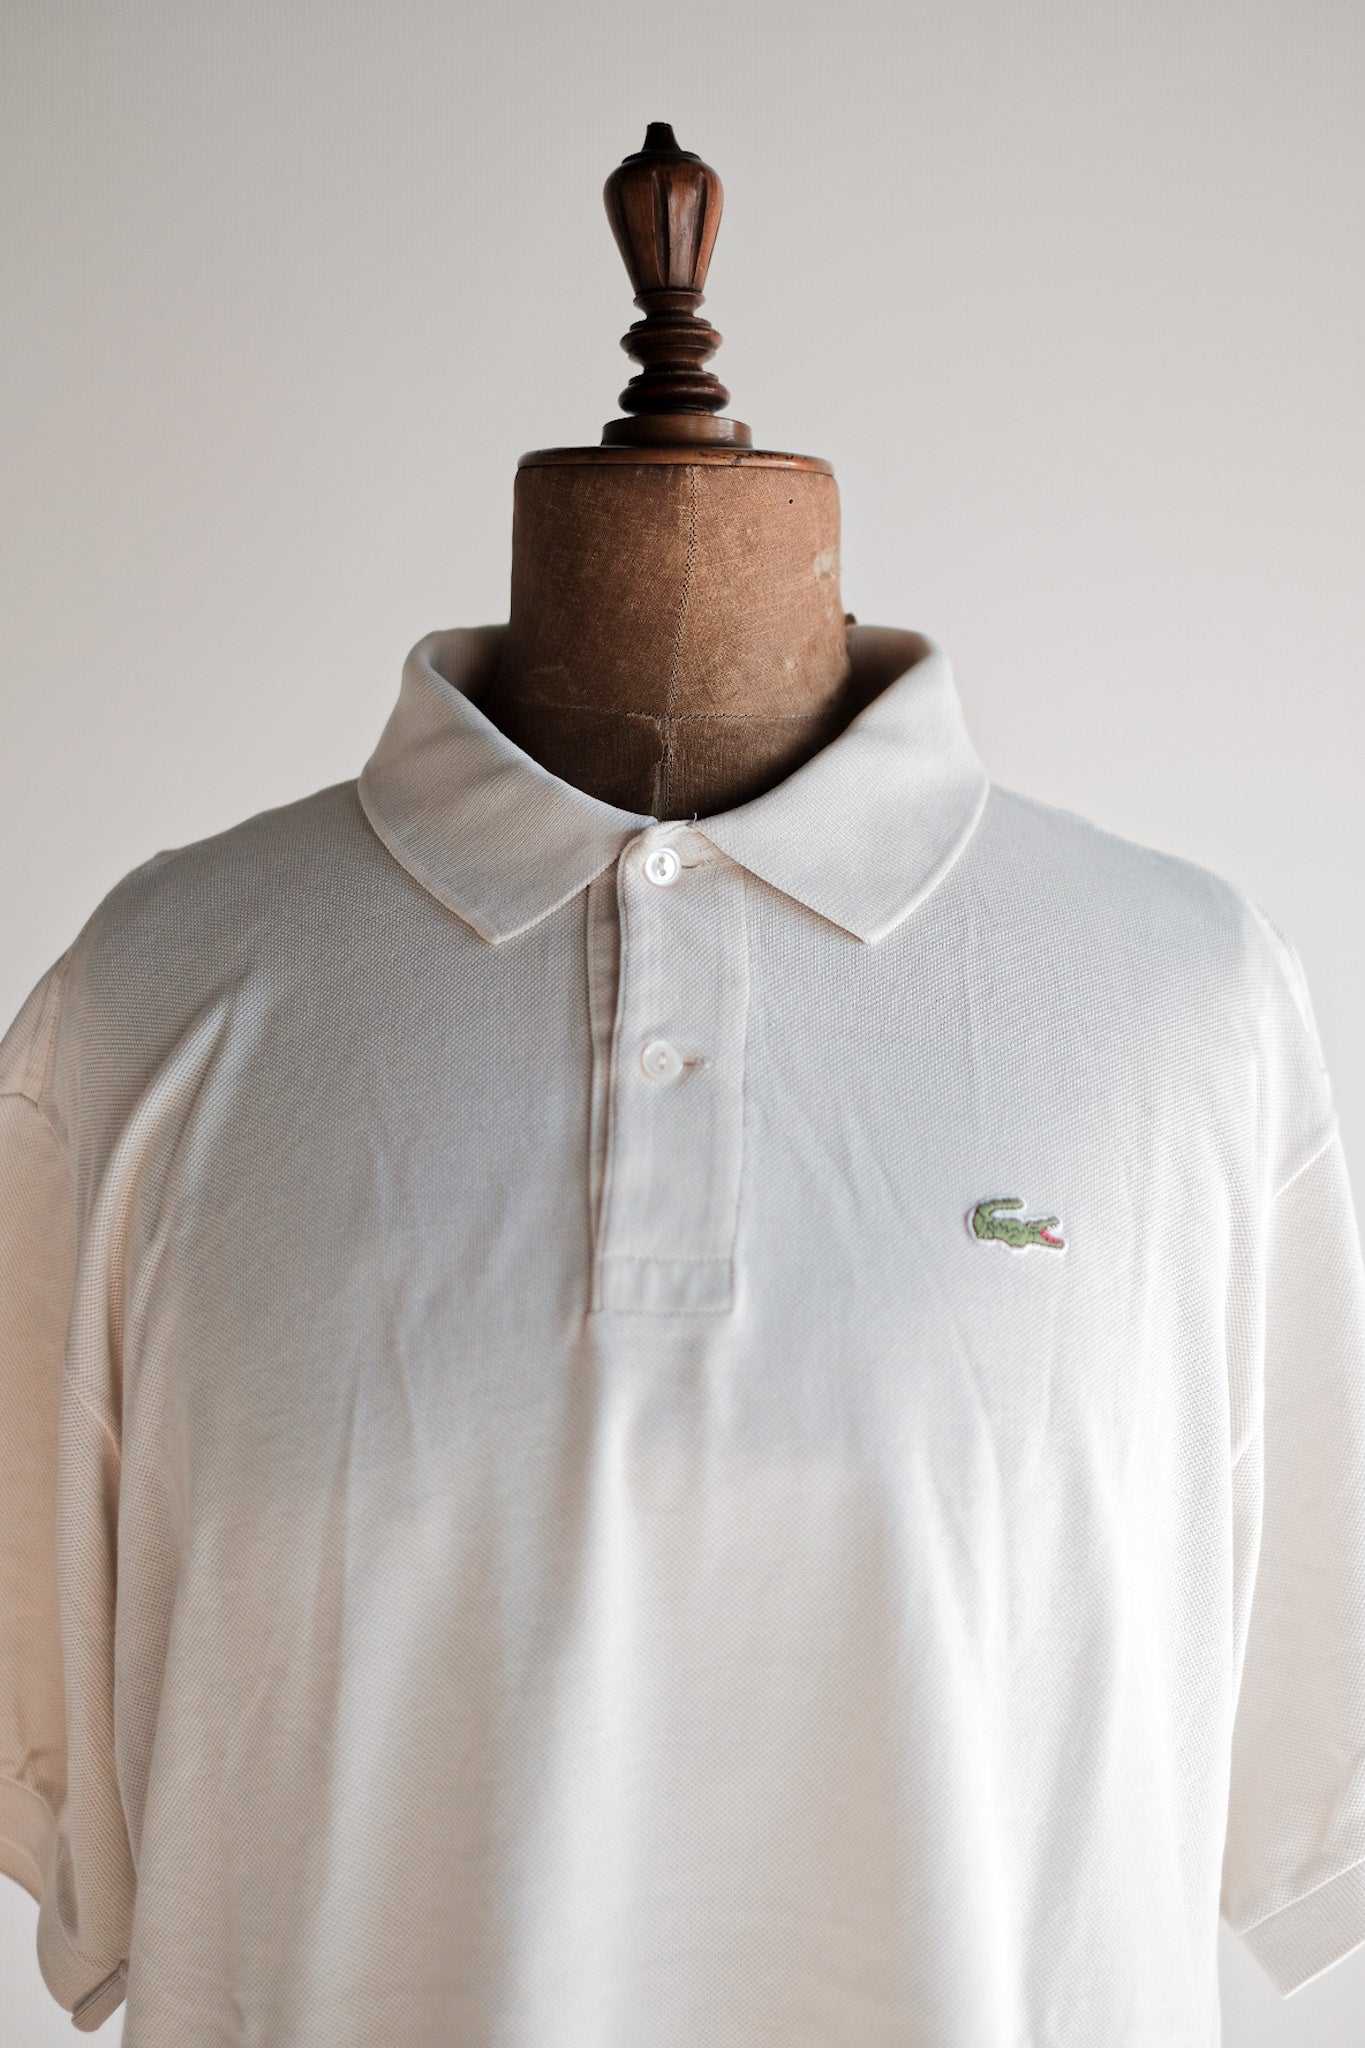 [〜80年代]顏色的lacoste s/s polo襯衫襯衫大小。7“ ecru”